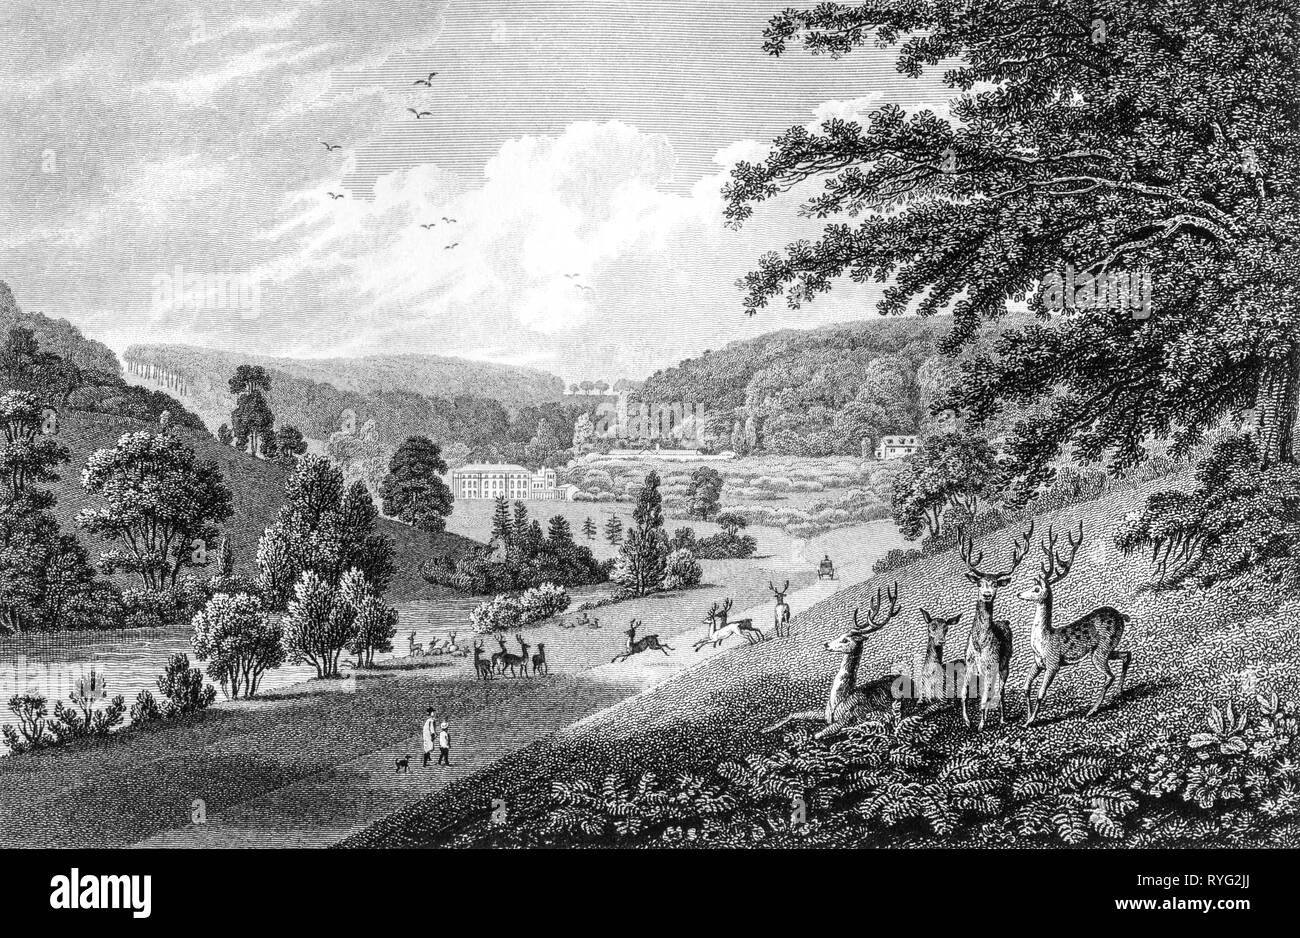 Gravieren von Spring Park Mansion, Woodchester, Gloucestershire UK bei hoher Auflösung aus einem Buch 1825 veröffentlicht gescannt. Glaubten copyright frei. Stockfoto